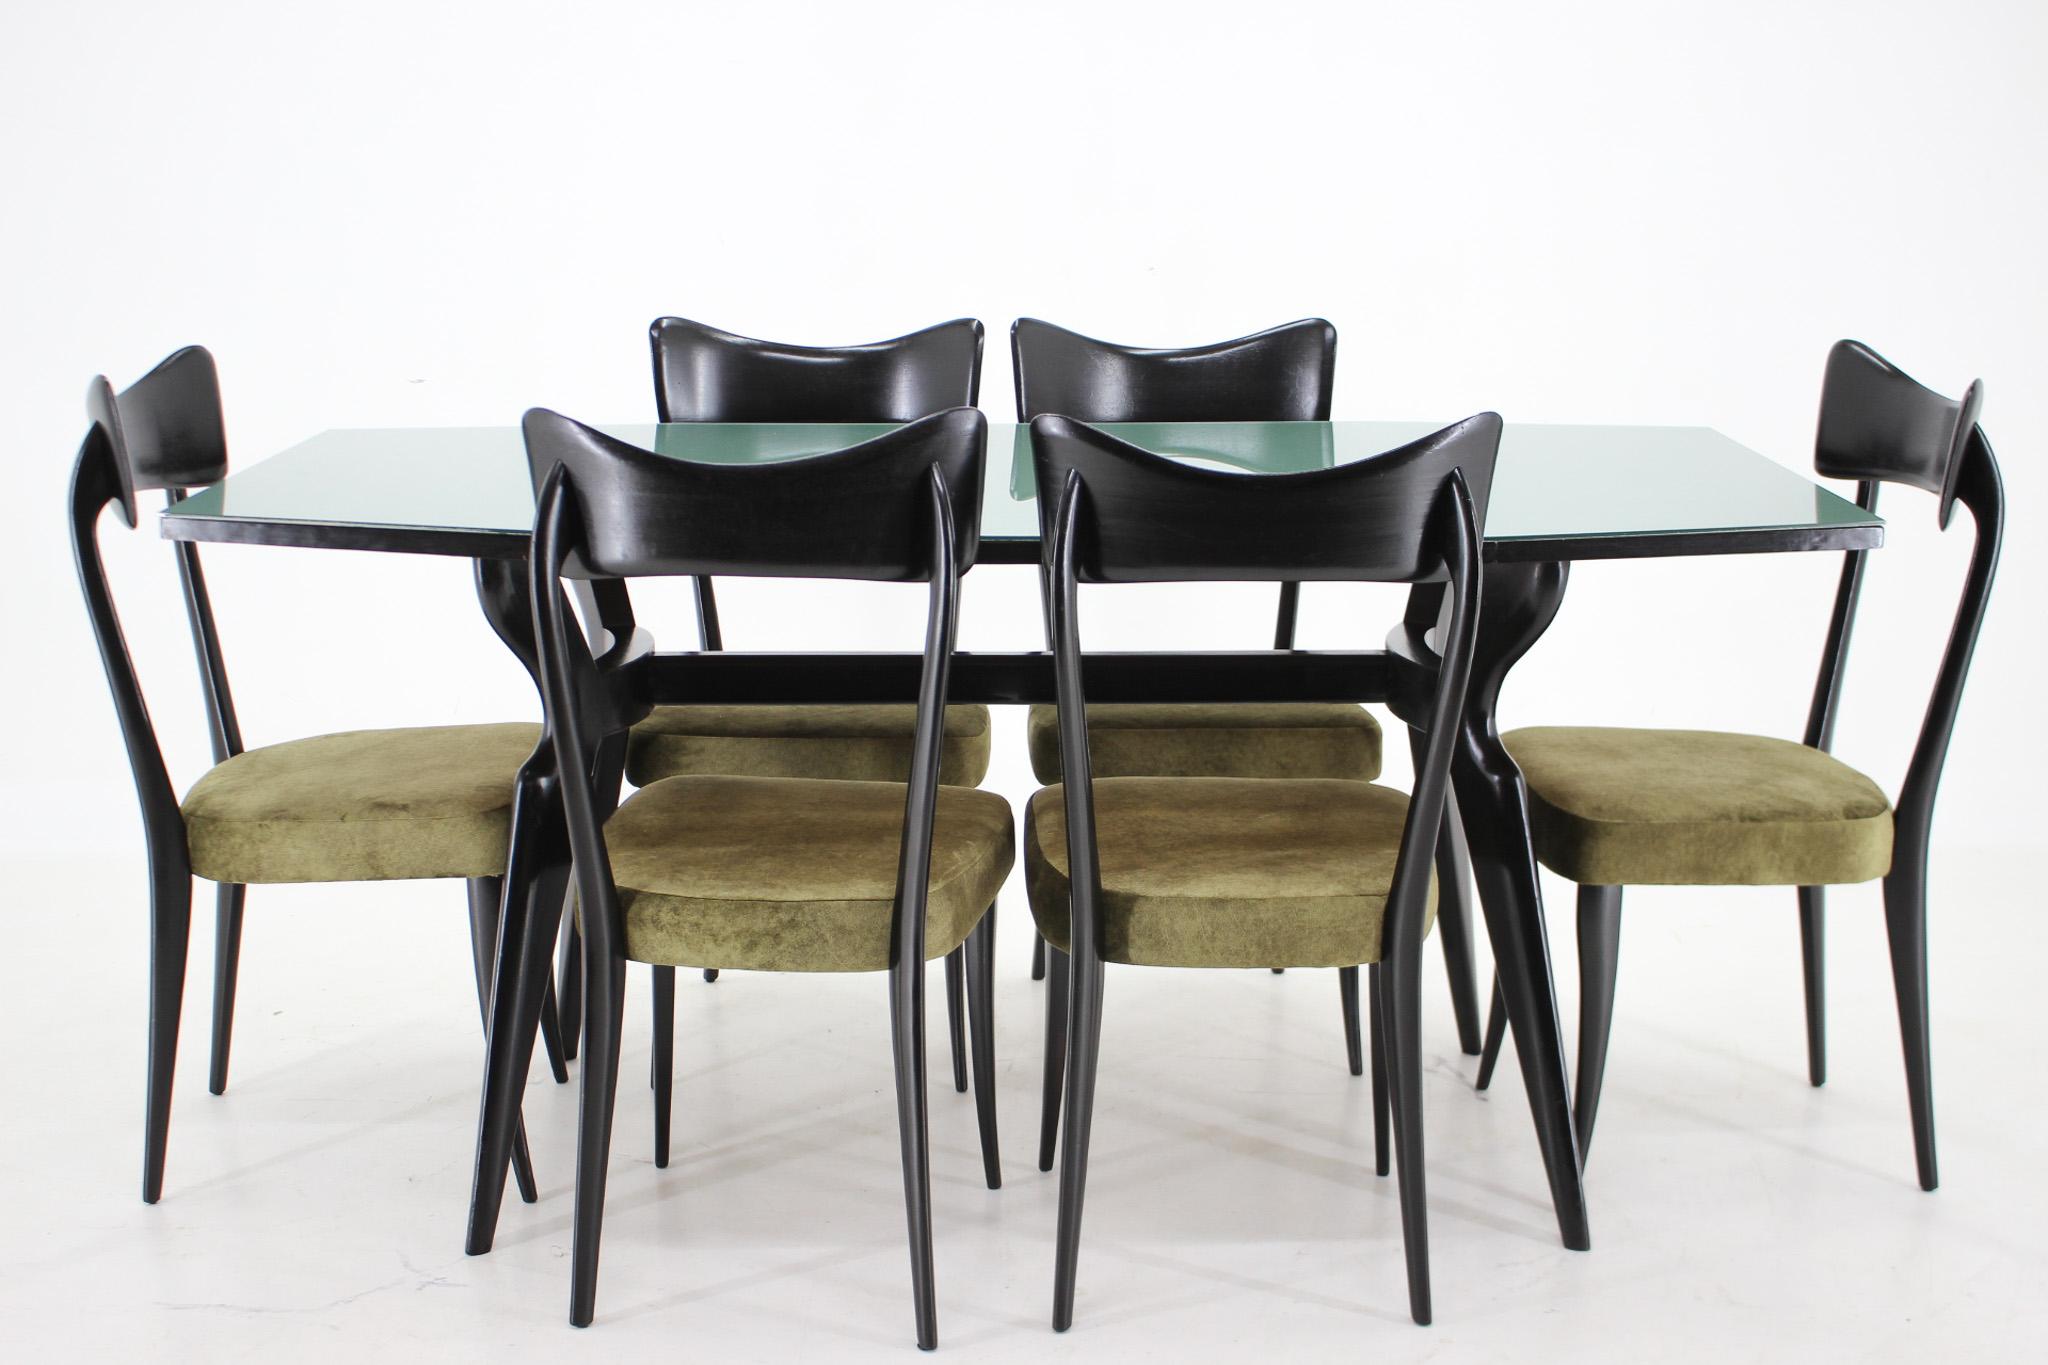 Magnifique ensemble de table à manger et six chaises dans le style du célèbre architecte et designer italien Ico Parisi. Très bon état d'origine. Les chaises sont très stables et nouvellement tapissées en tissu velours avec une technologie de